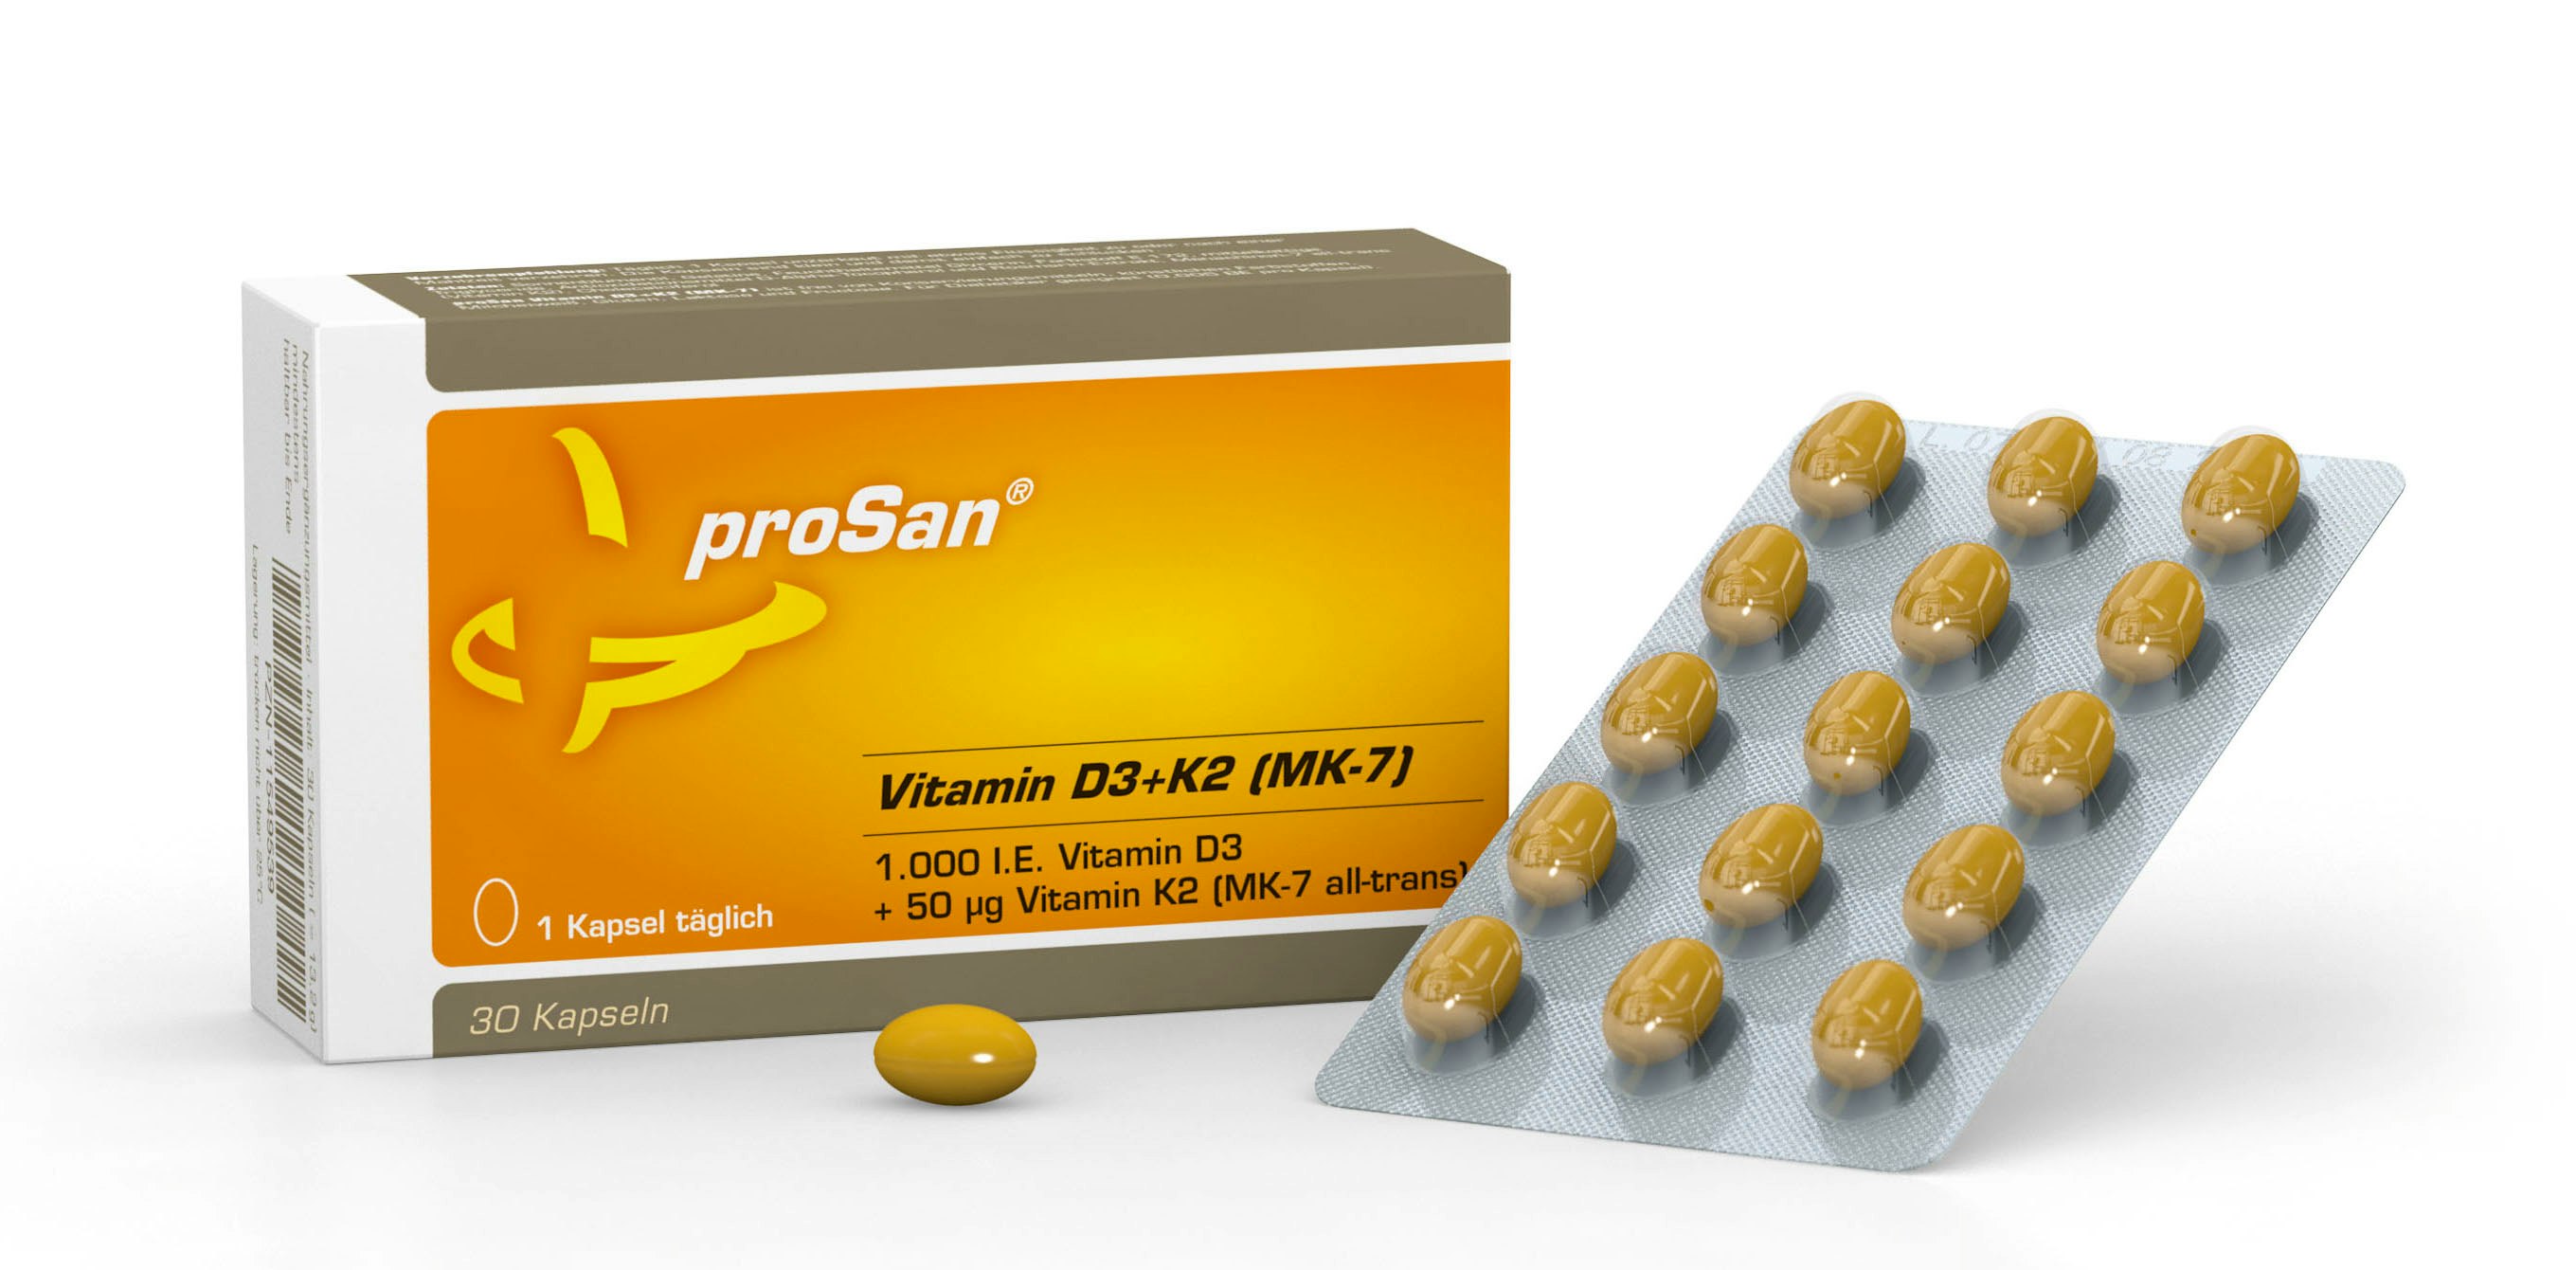 proSan Vitamin D3+K2 (MK-7)